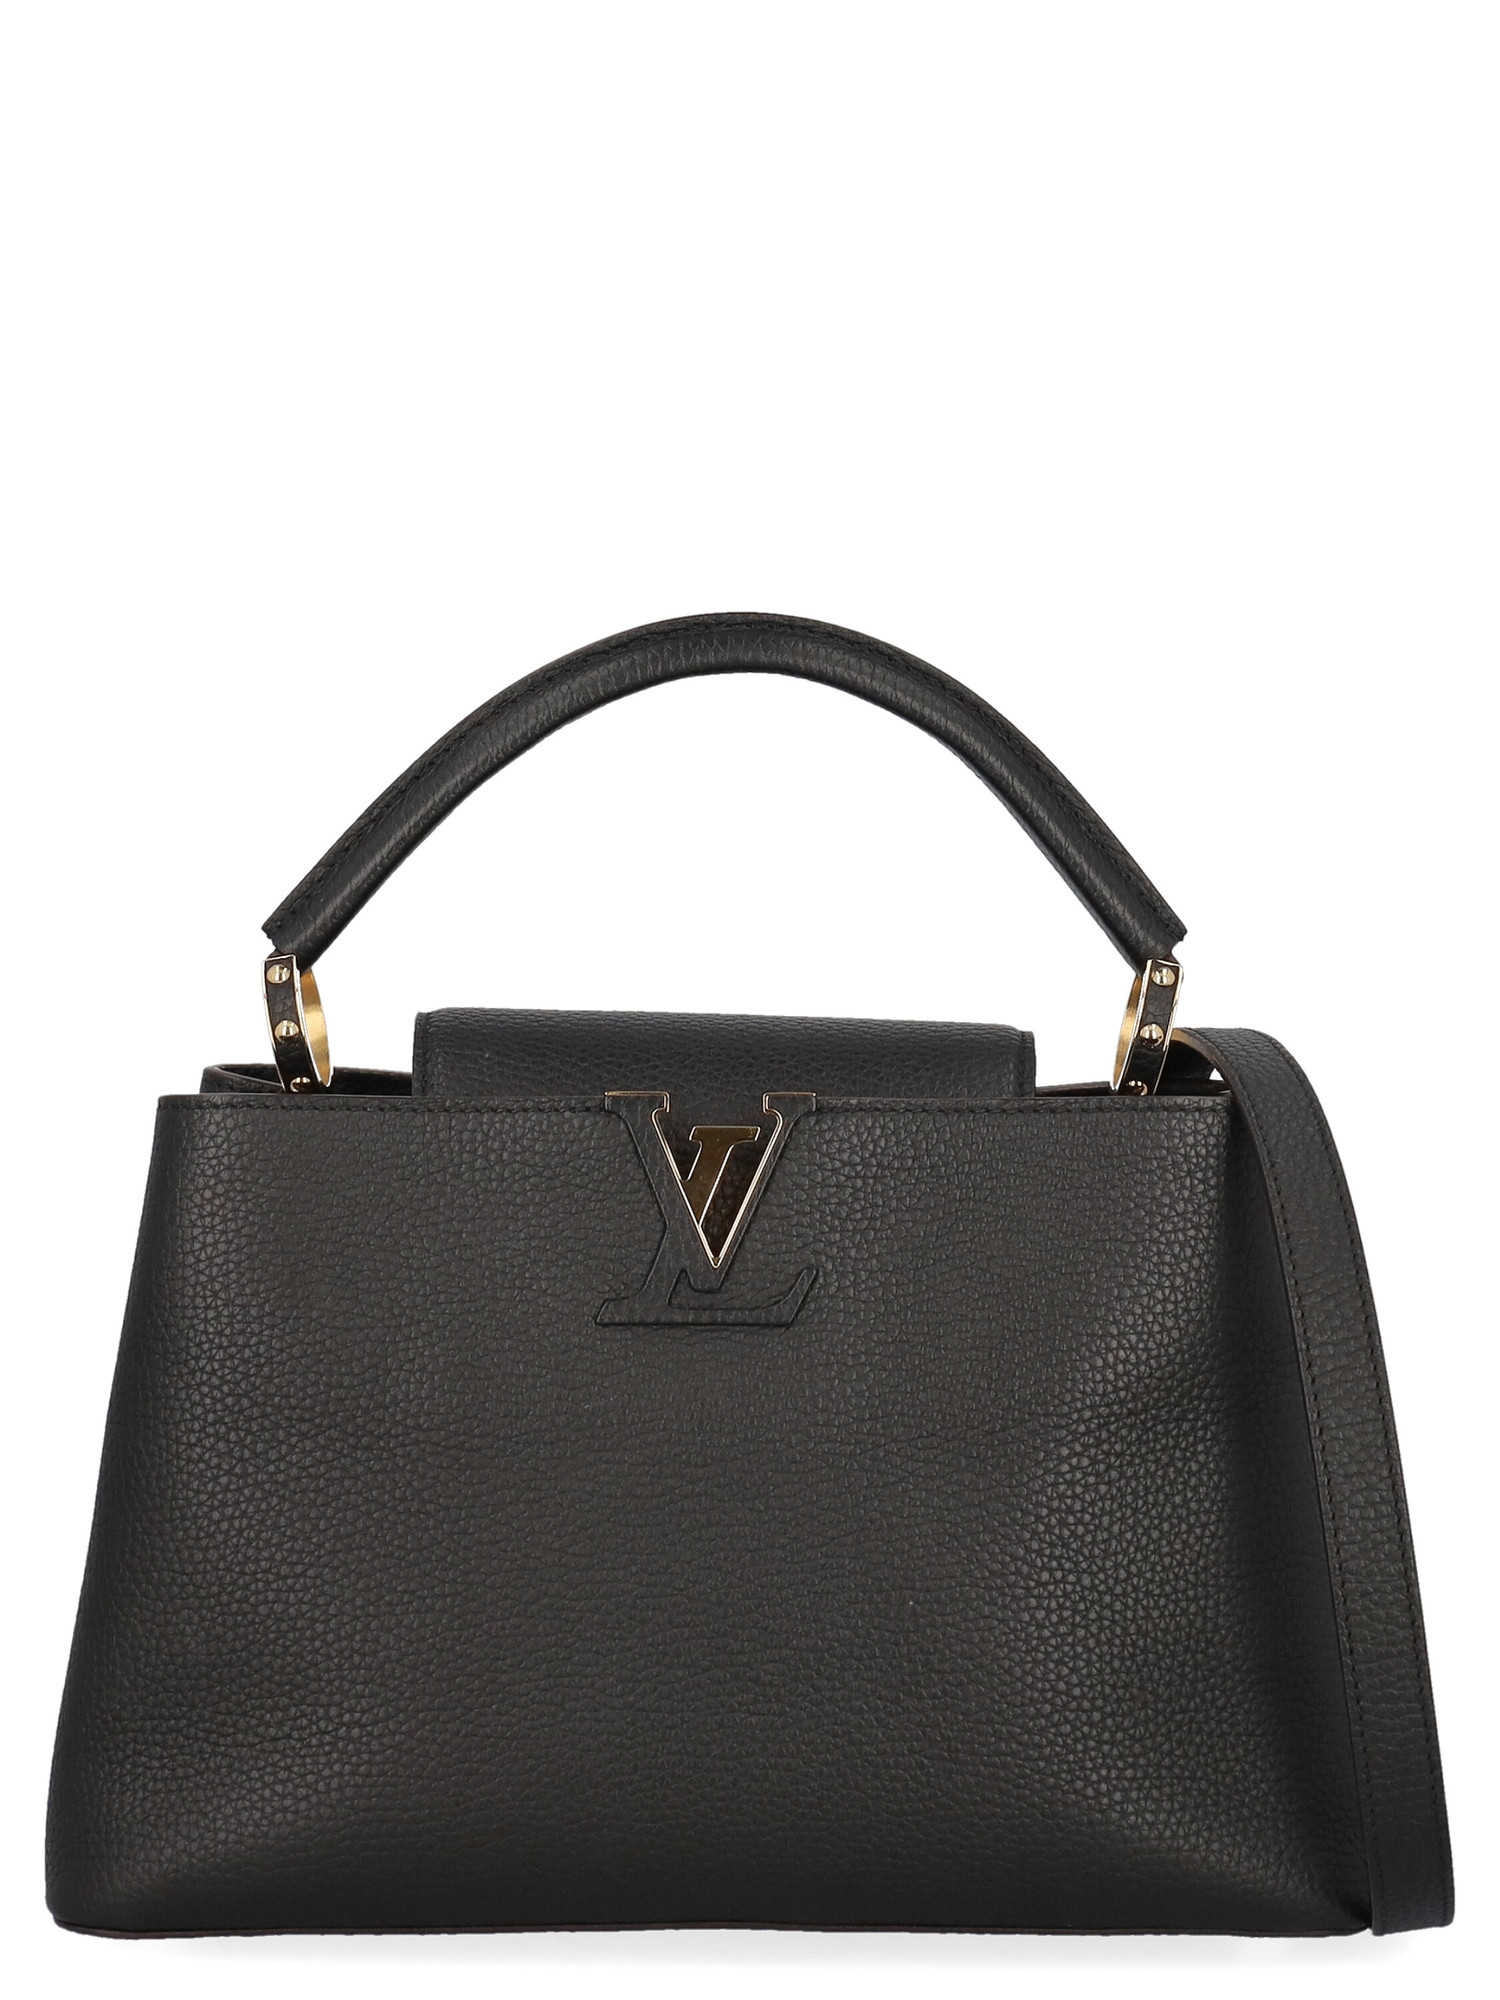 Sacs À Main Pour Femme - Louis Vuitton - En Leather Black - Taille:  -